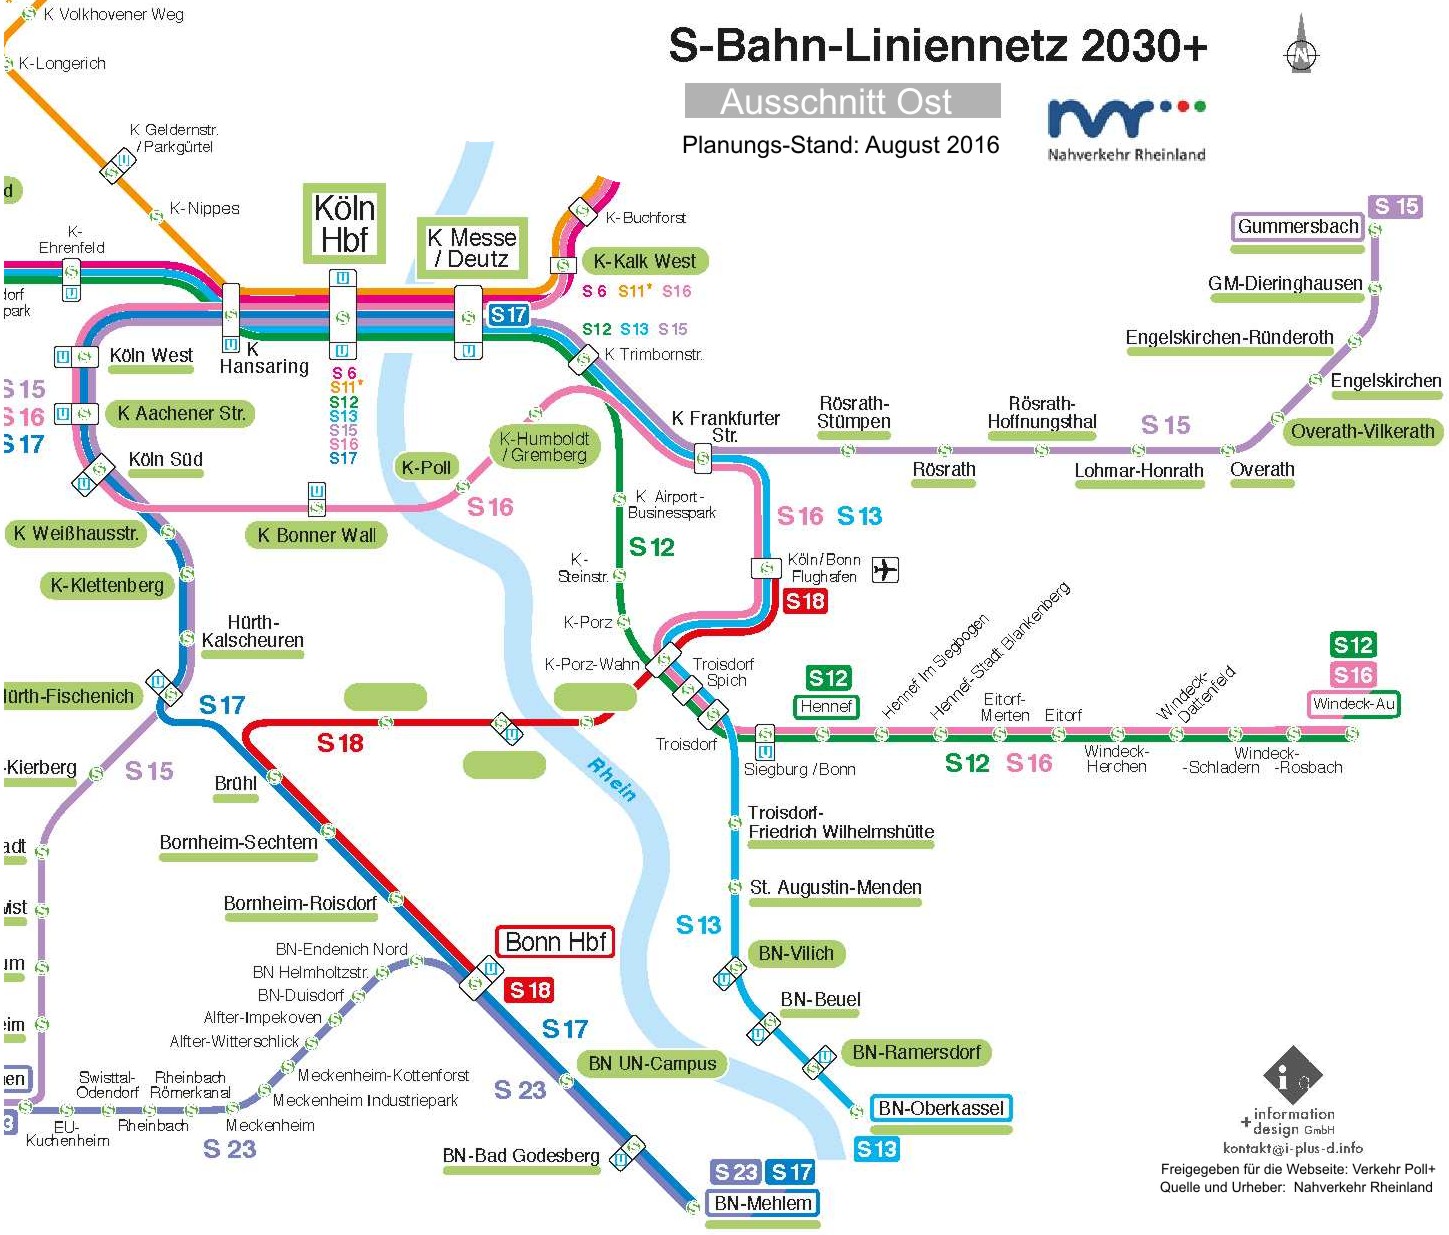 S-Bahn-Liniennetz 2030+